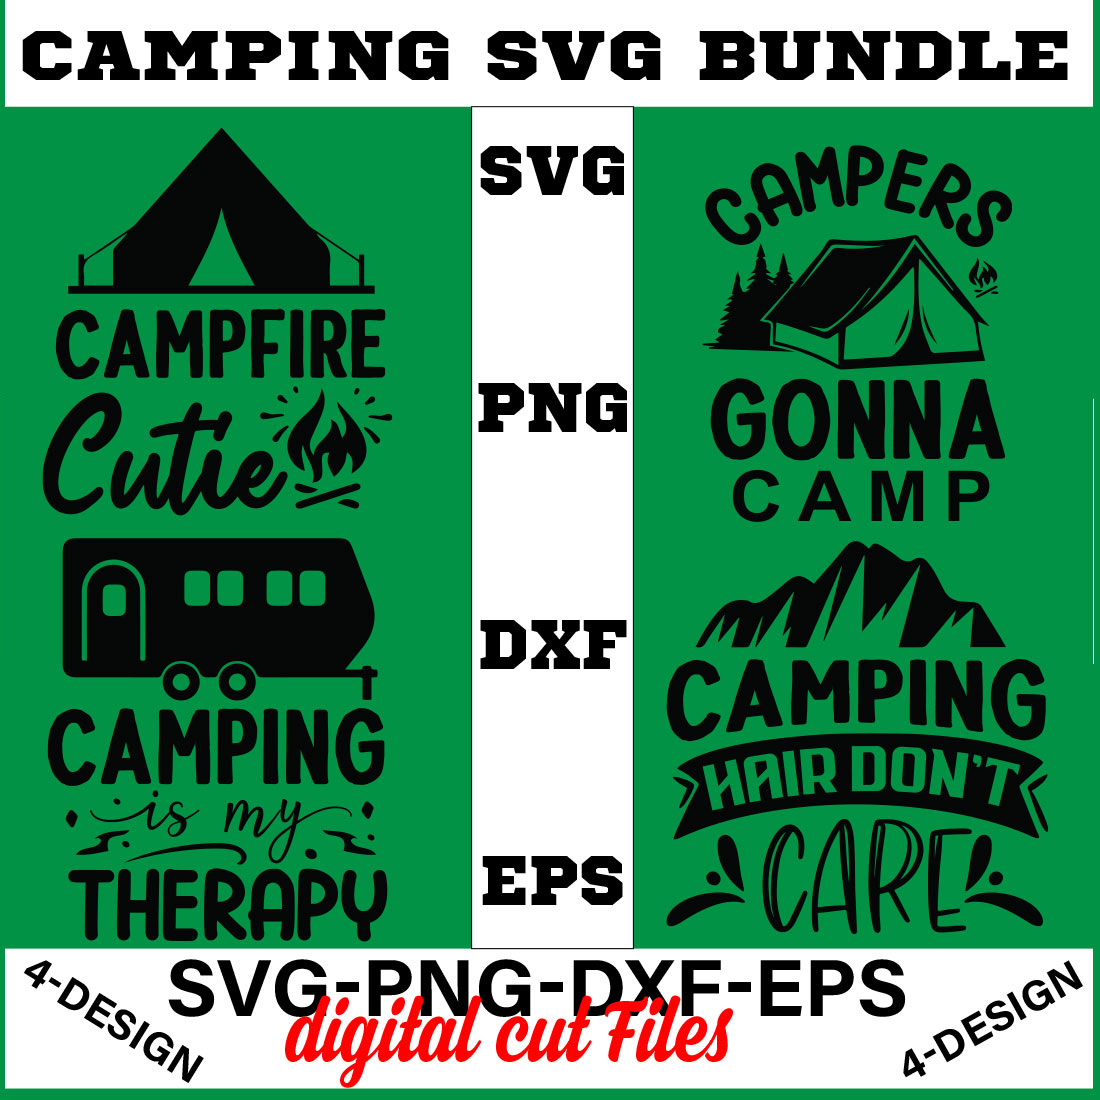 Camping SVG T-shirt Design Bundle Volume-01 cover image.